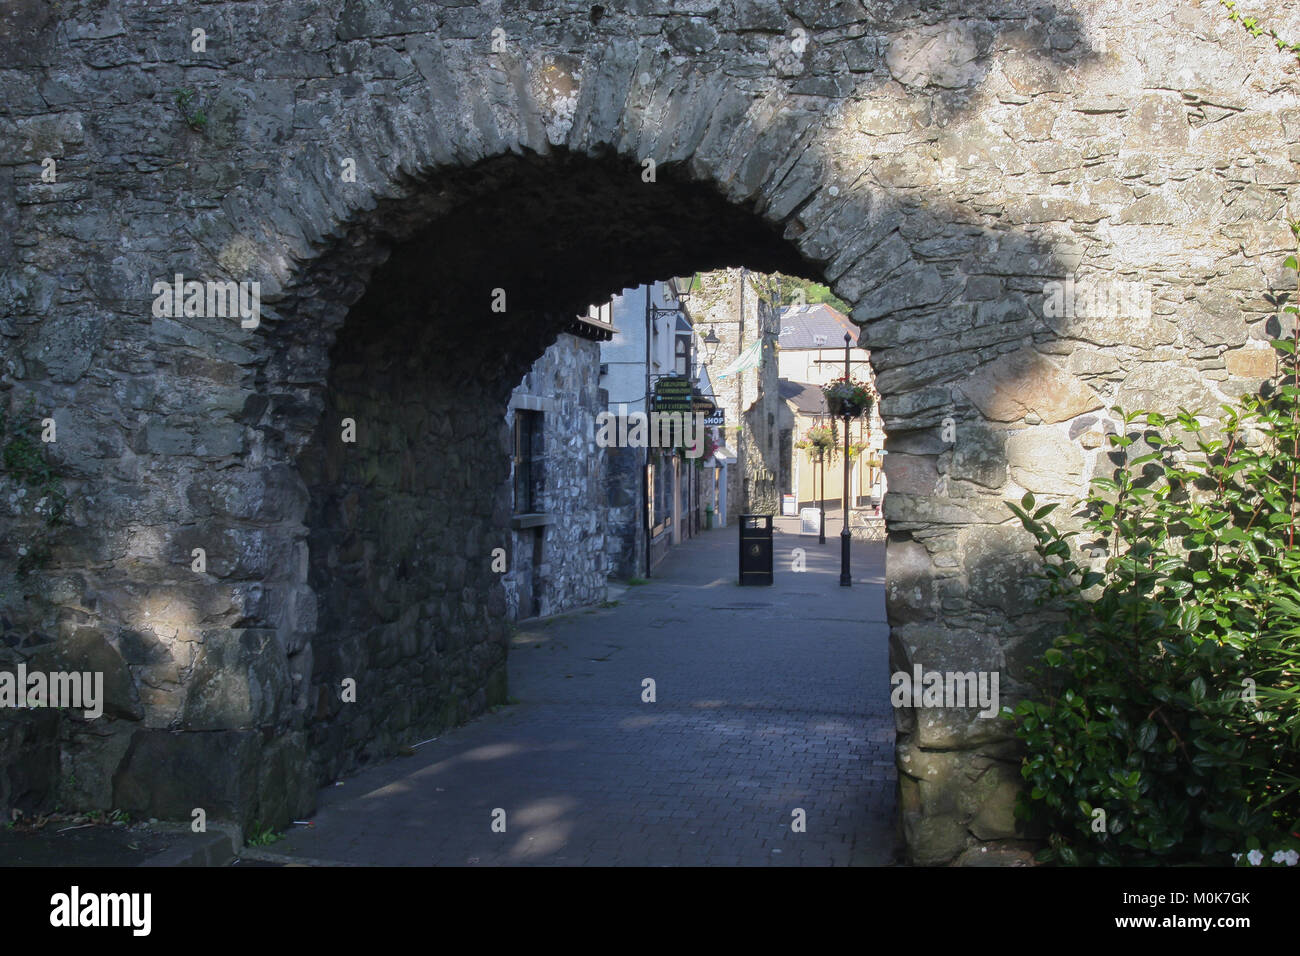 Die Tholsel in Carlingford, County Louth, Irland. Die Tholsel ist das letzte Tor in die ehemalige mittelalterliche Stadt Carlingford. Stockfoto